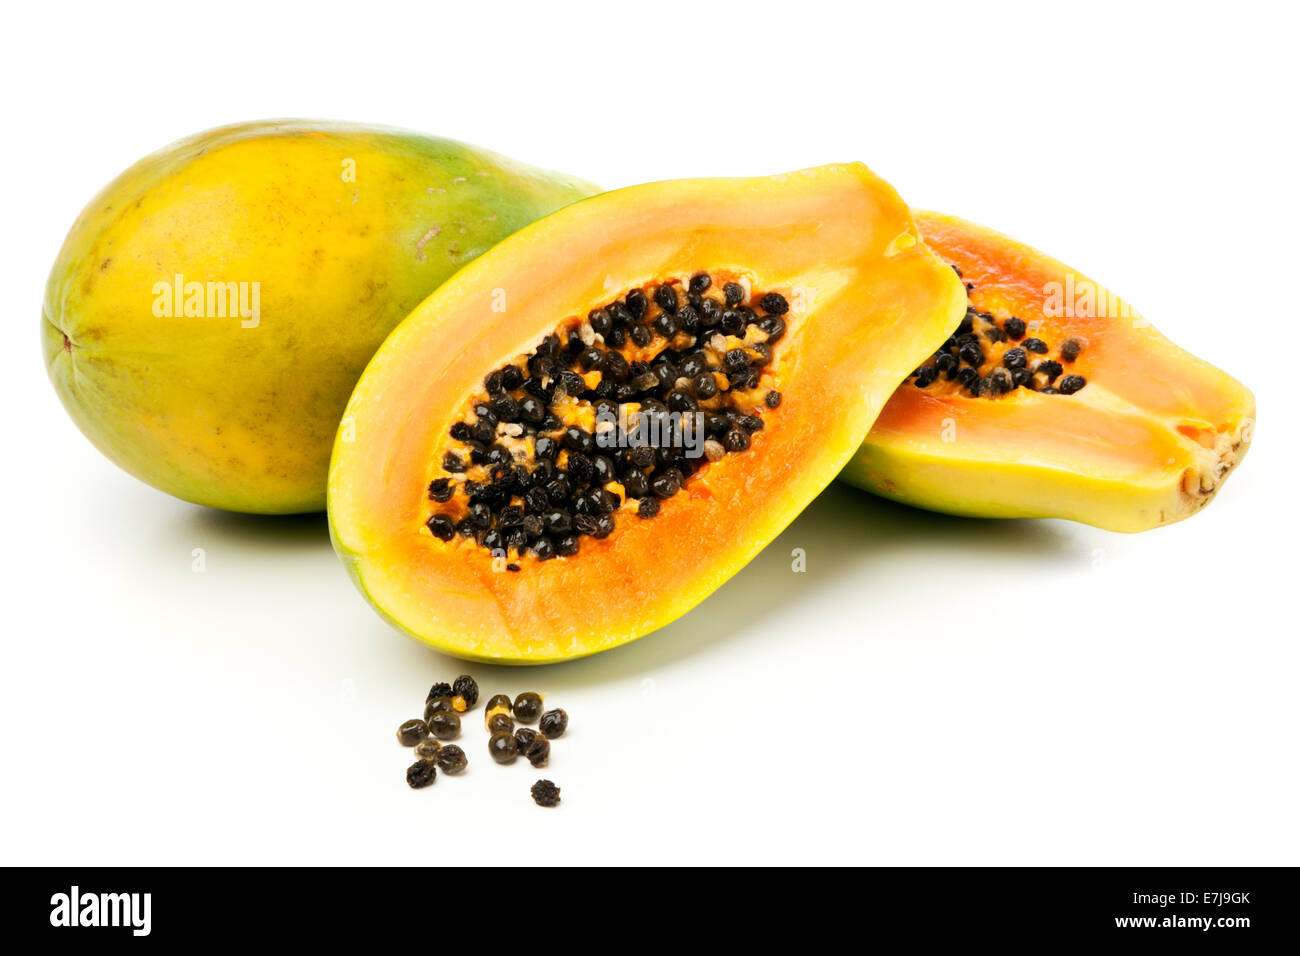 Papaya fruits on white background Stock Photo